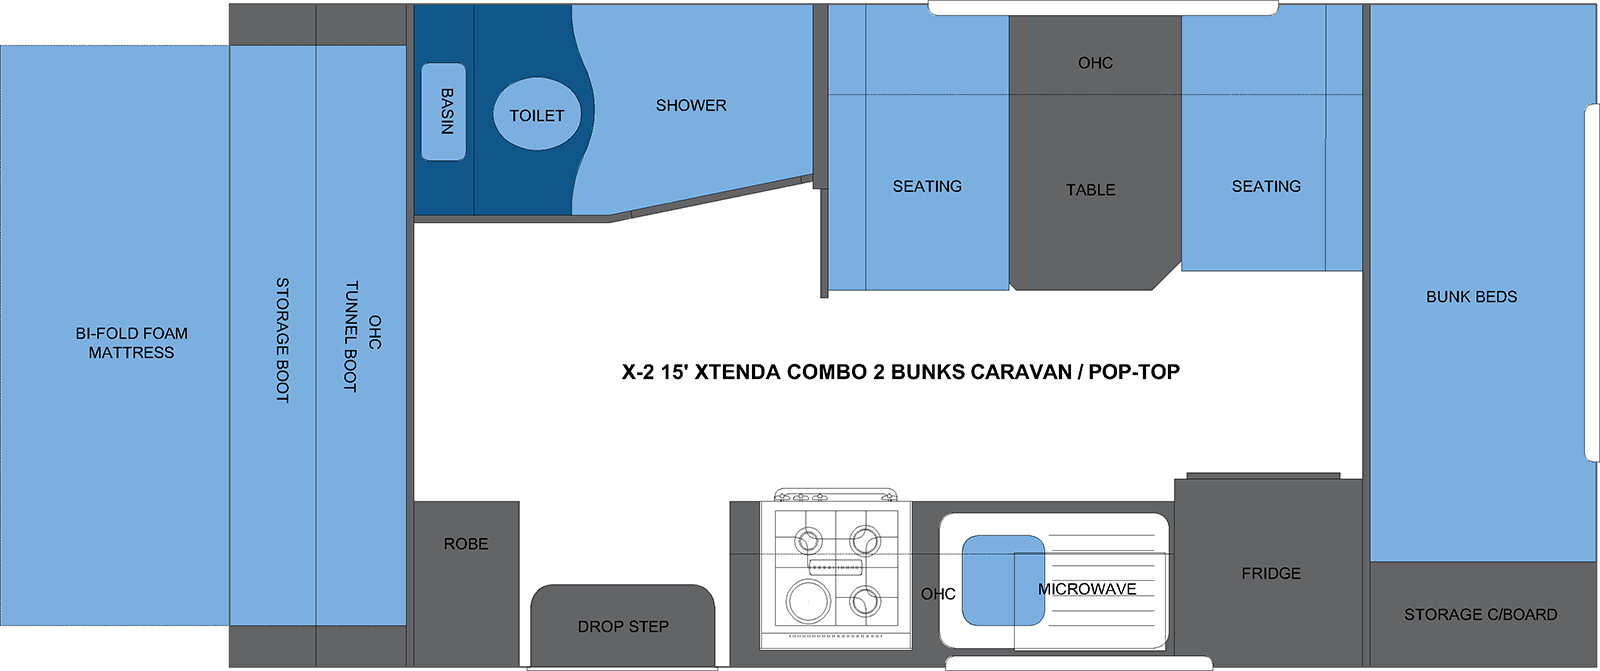 X-2 15' XTENDA COMBO 2 BUNKS CARAVAN